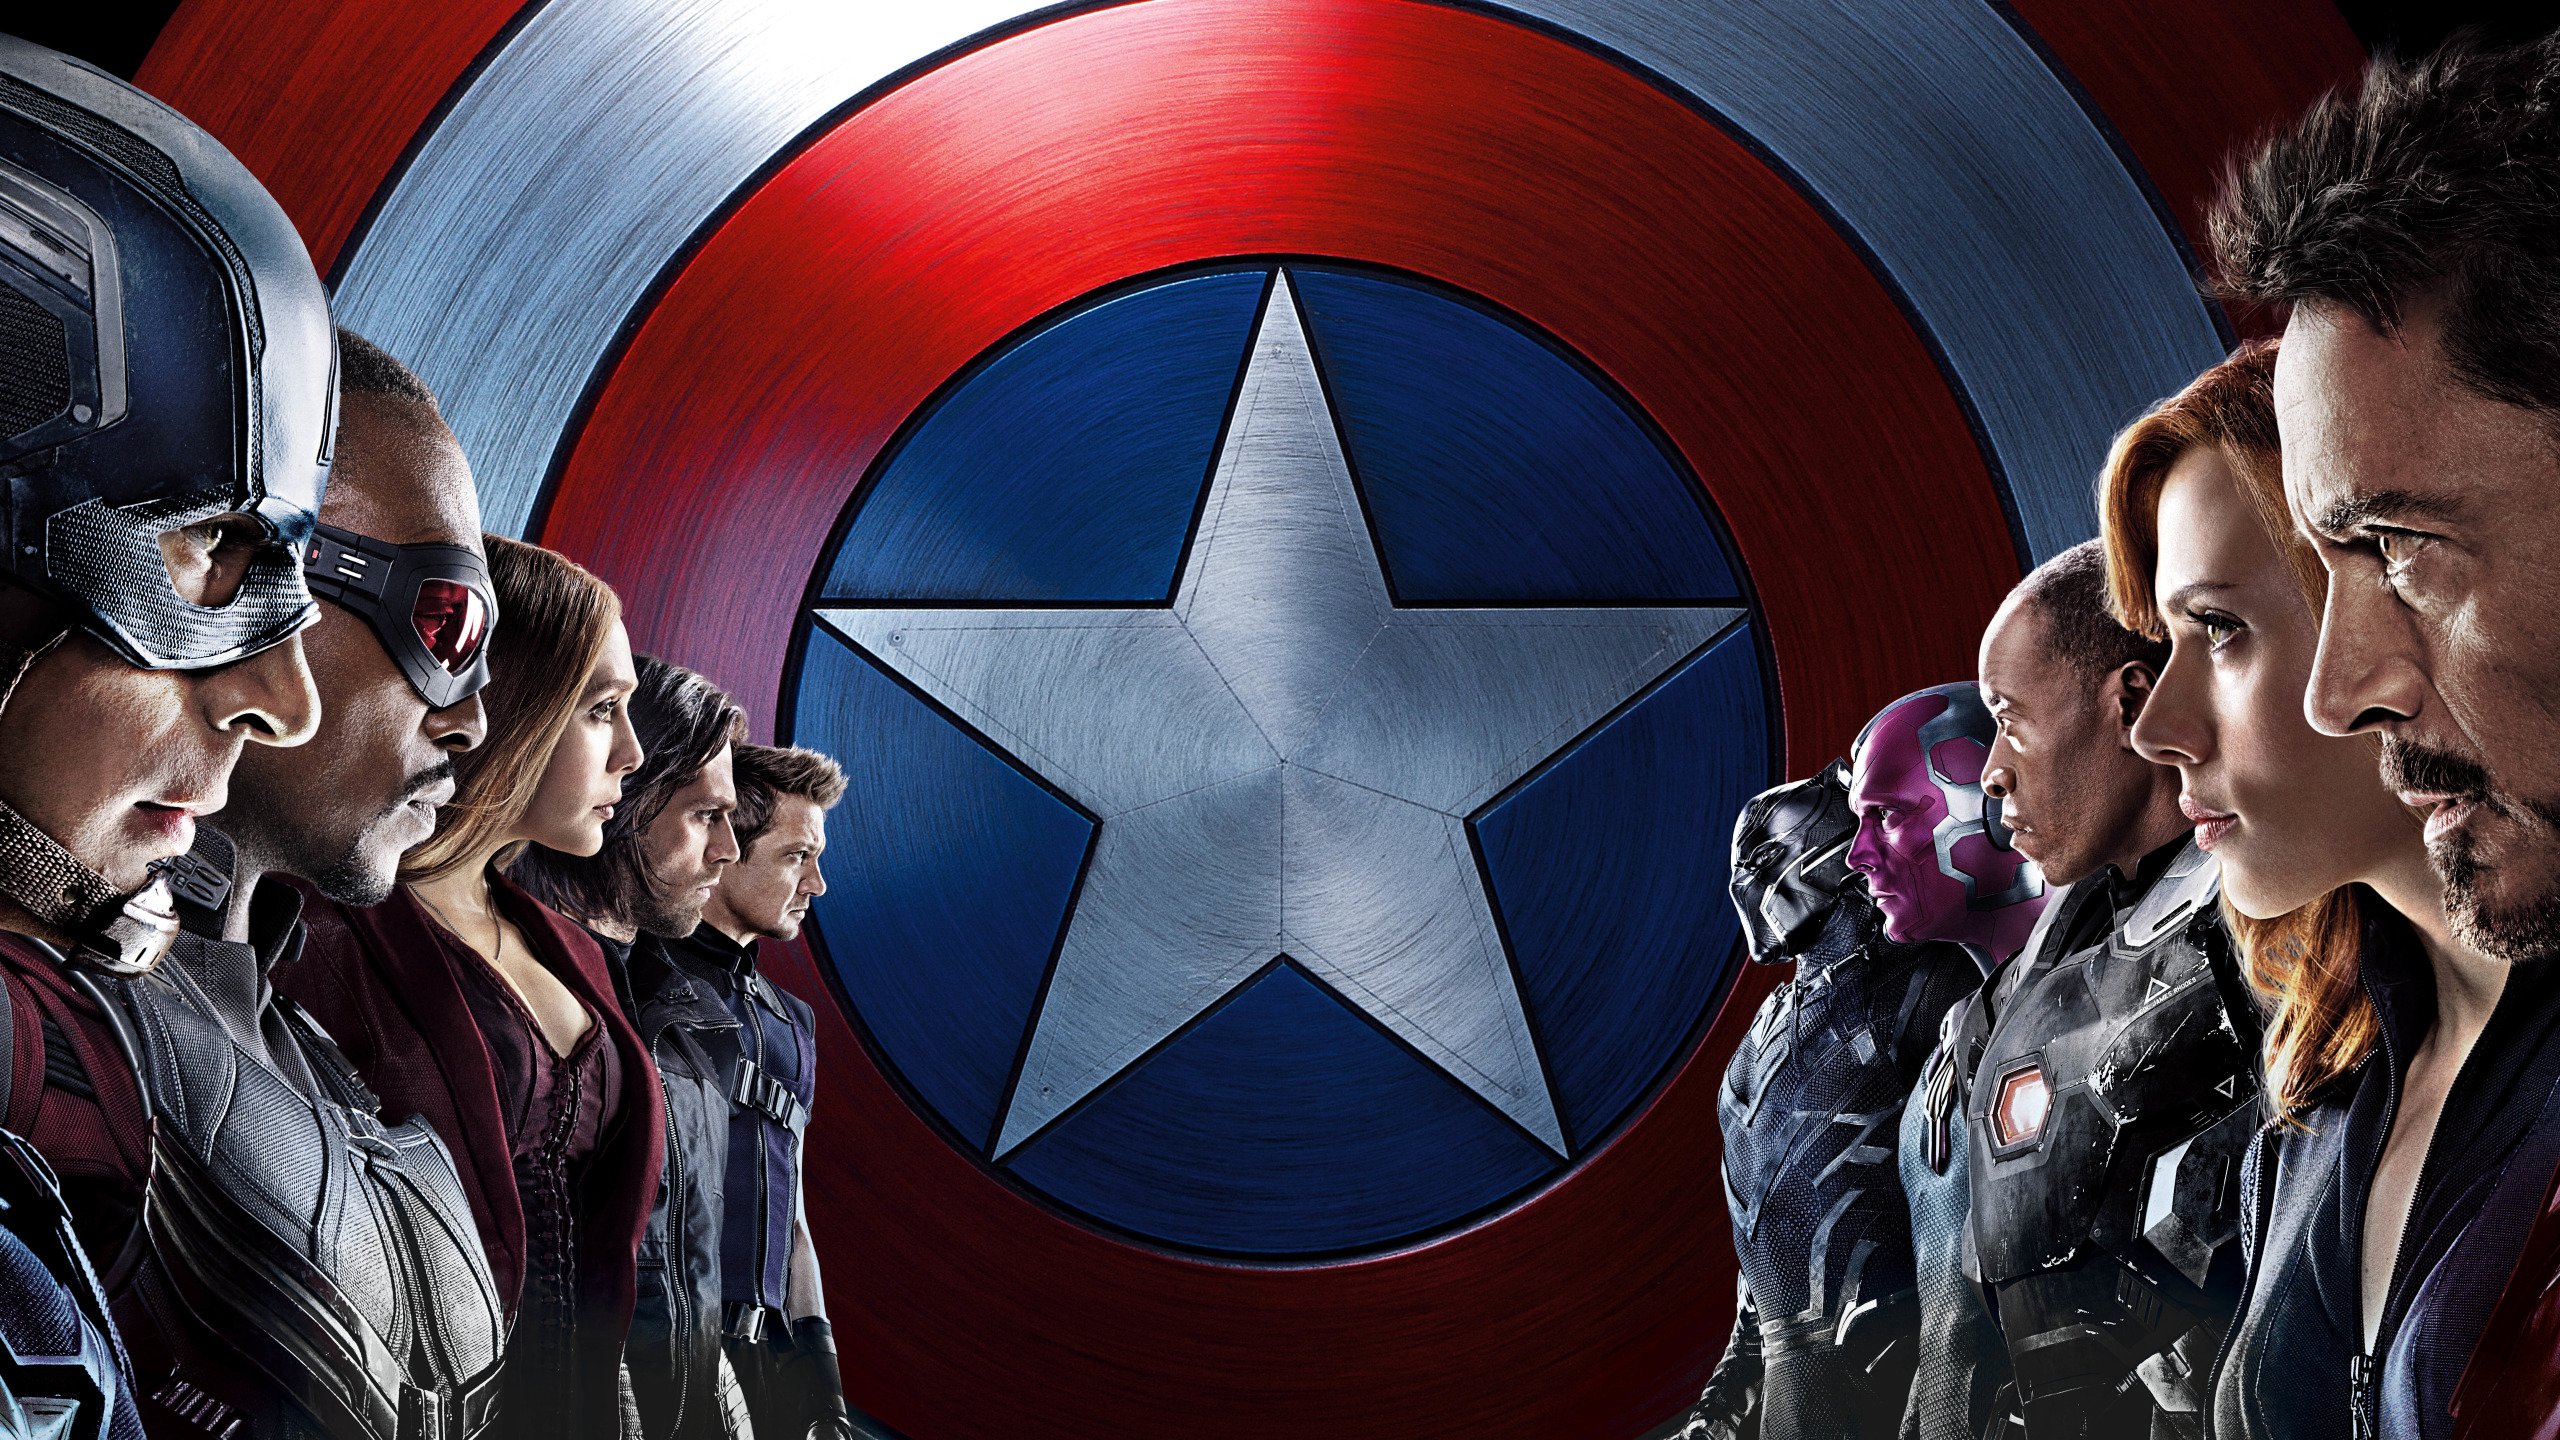 Первый мститель: Противостояние (2016). Капитан Америка первый мститель Противостояние. Первый мститель 3.